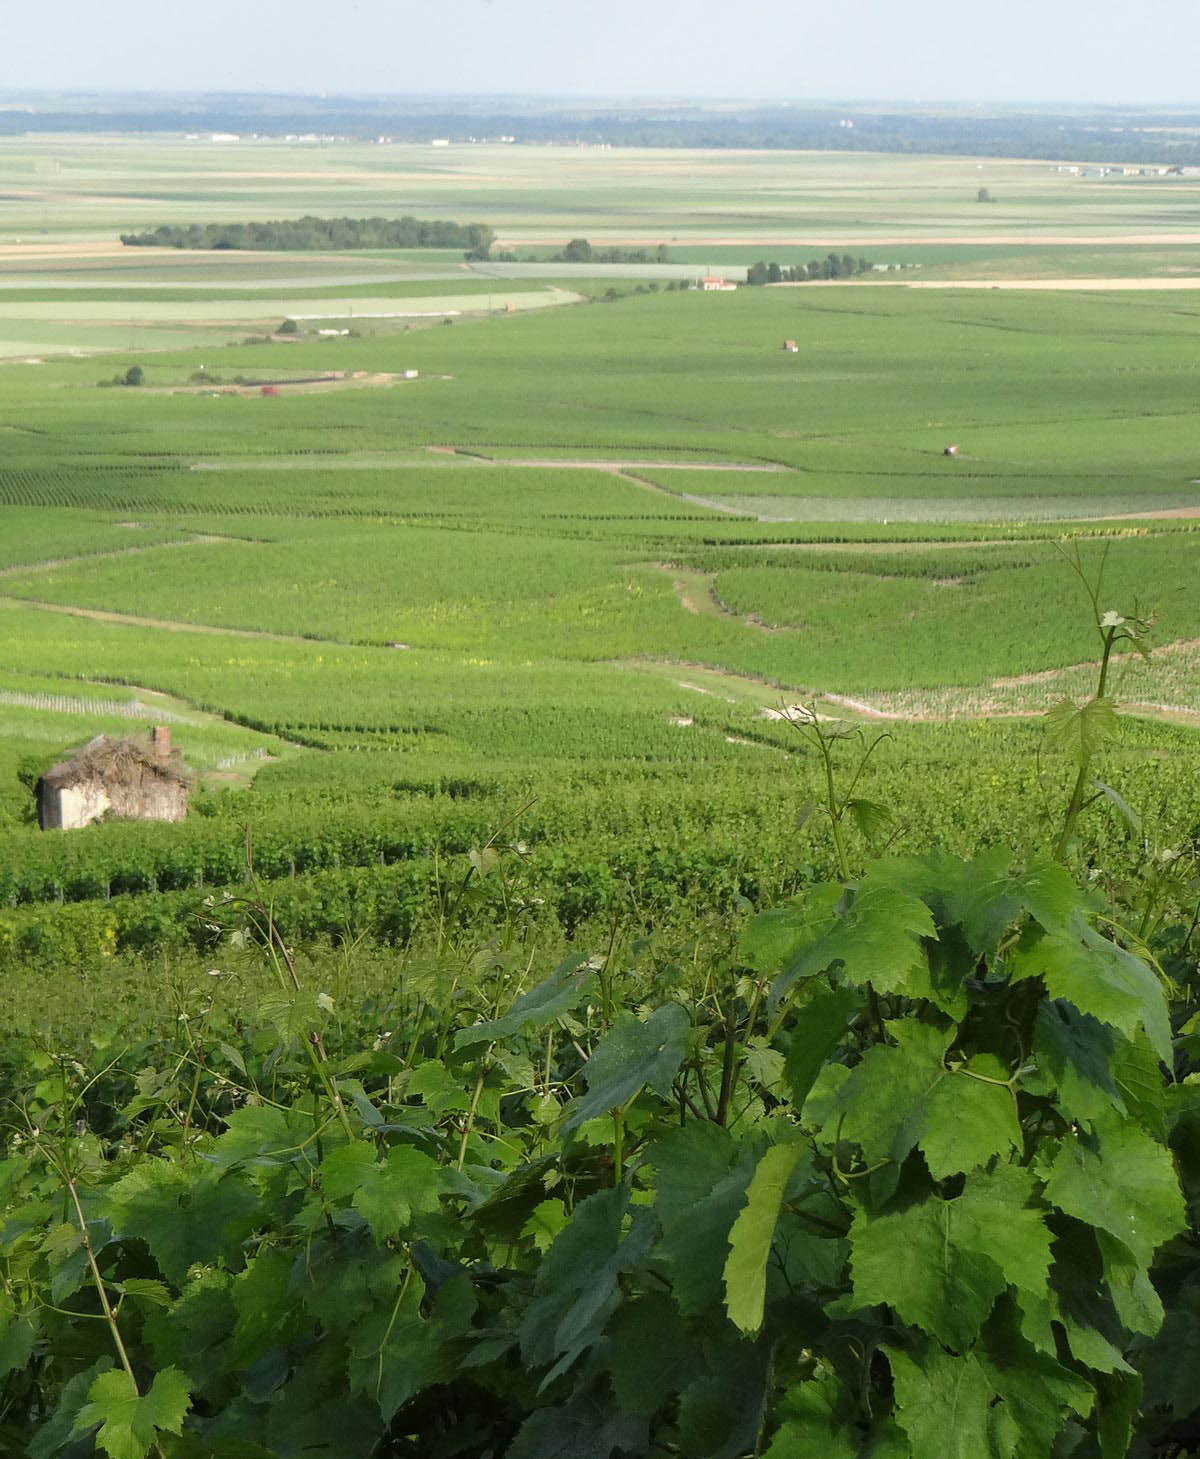 Rolling vineyards of healthy vines